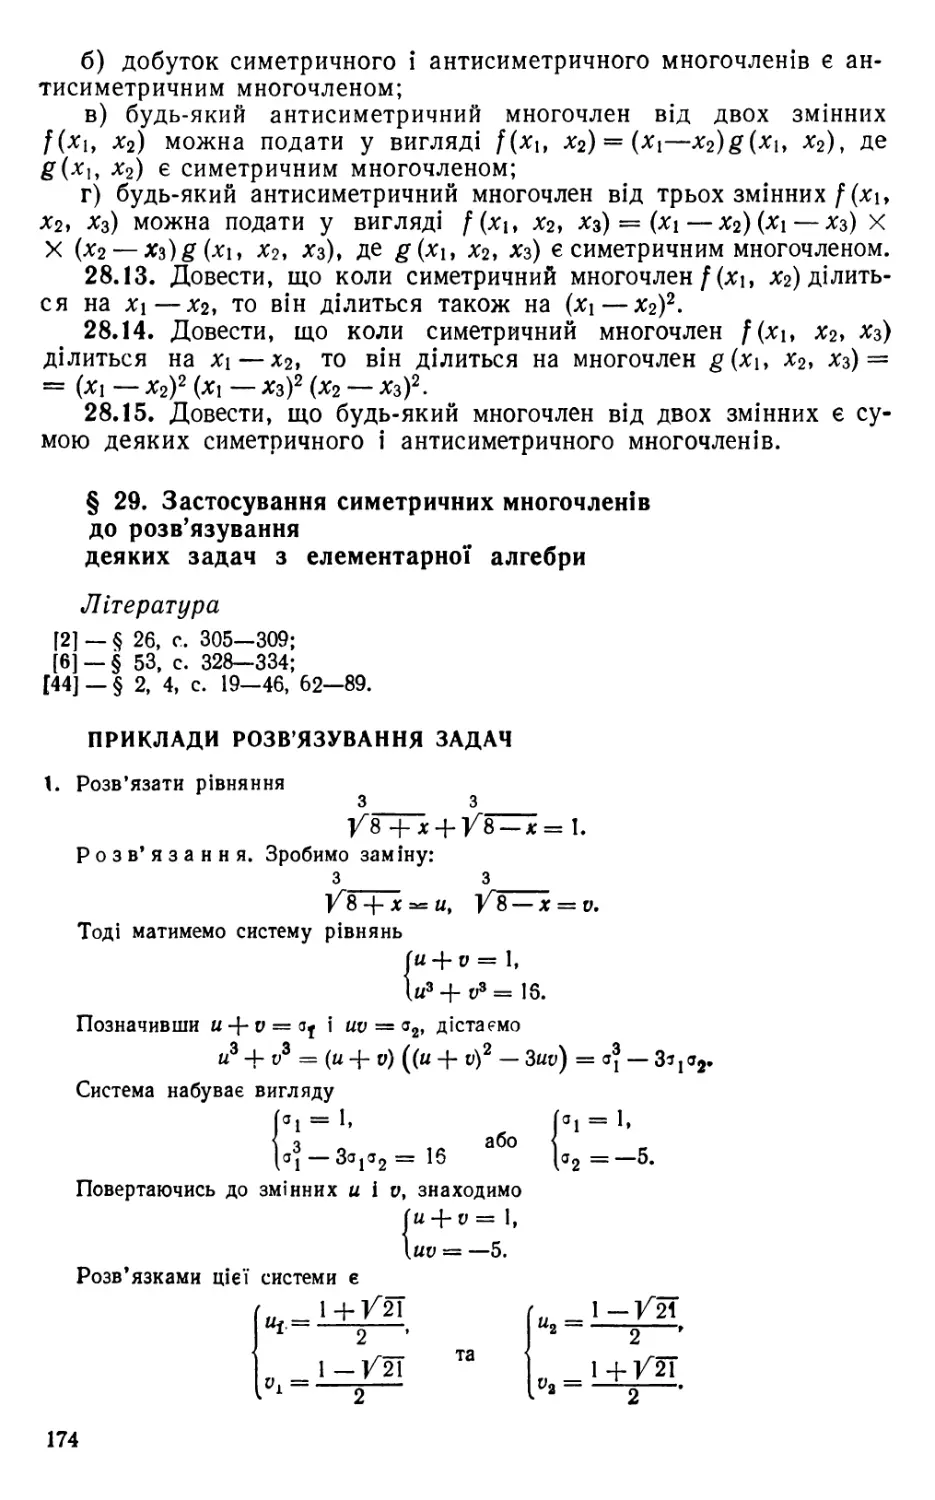 § 29. Застосування симетричних многочленів до розв'язування деяких задач з елементарної алгебри